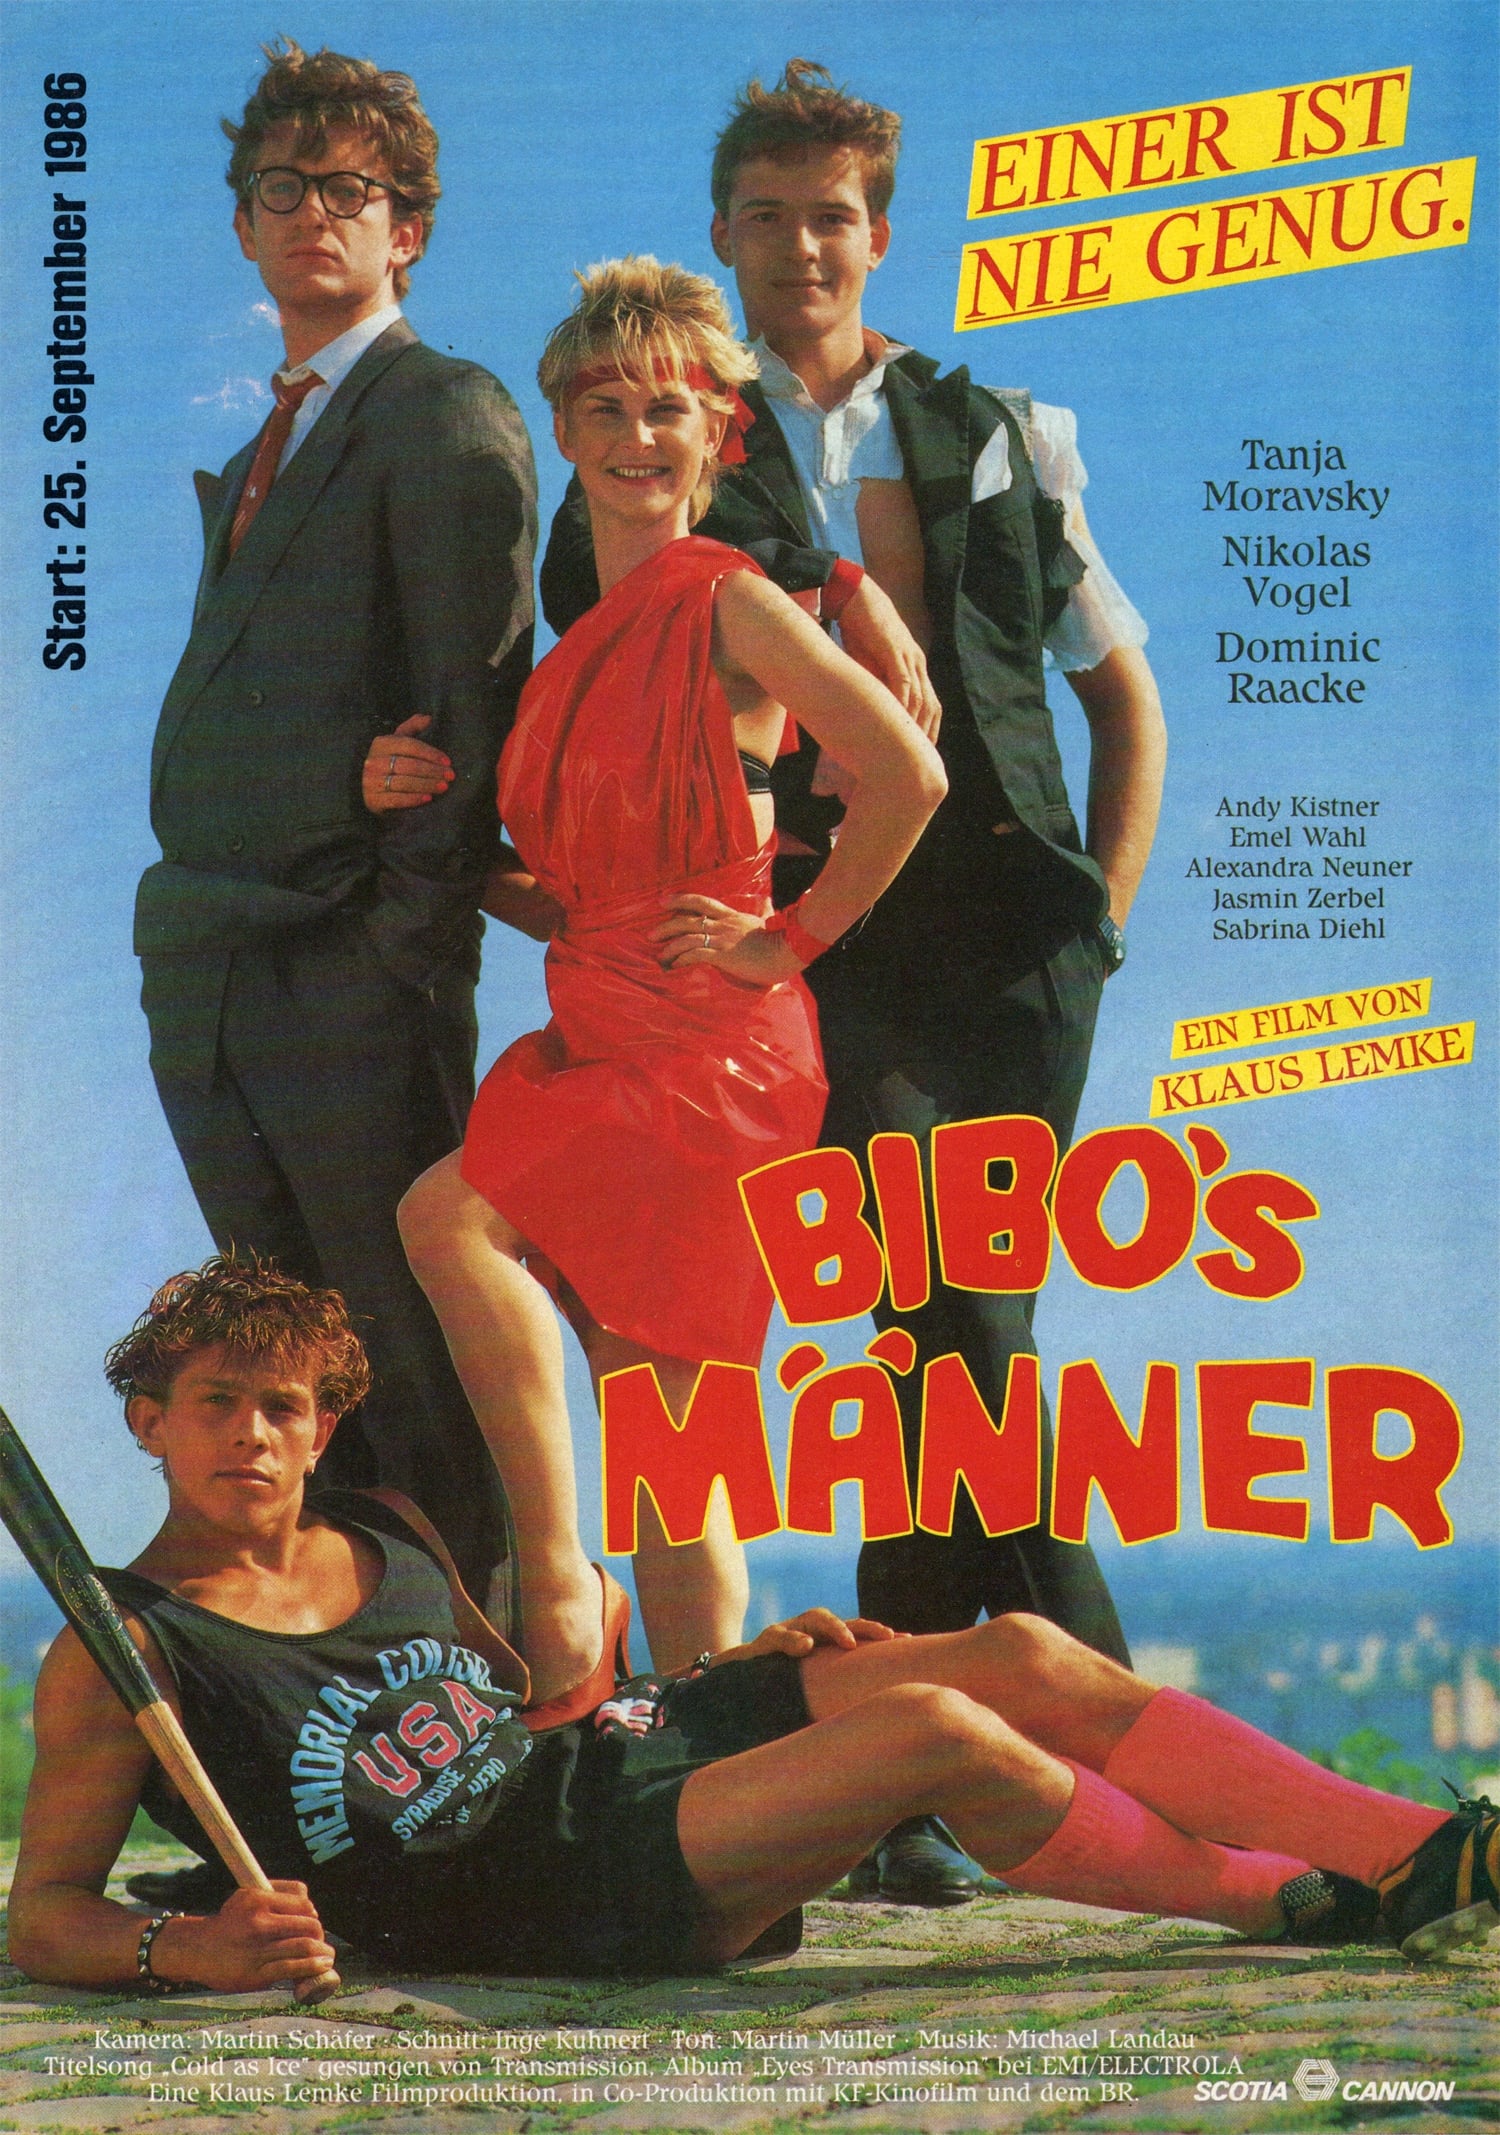 Bibos Männer (1986)